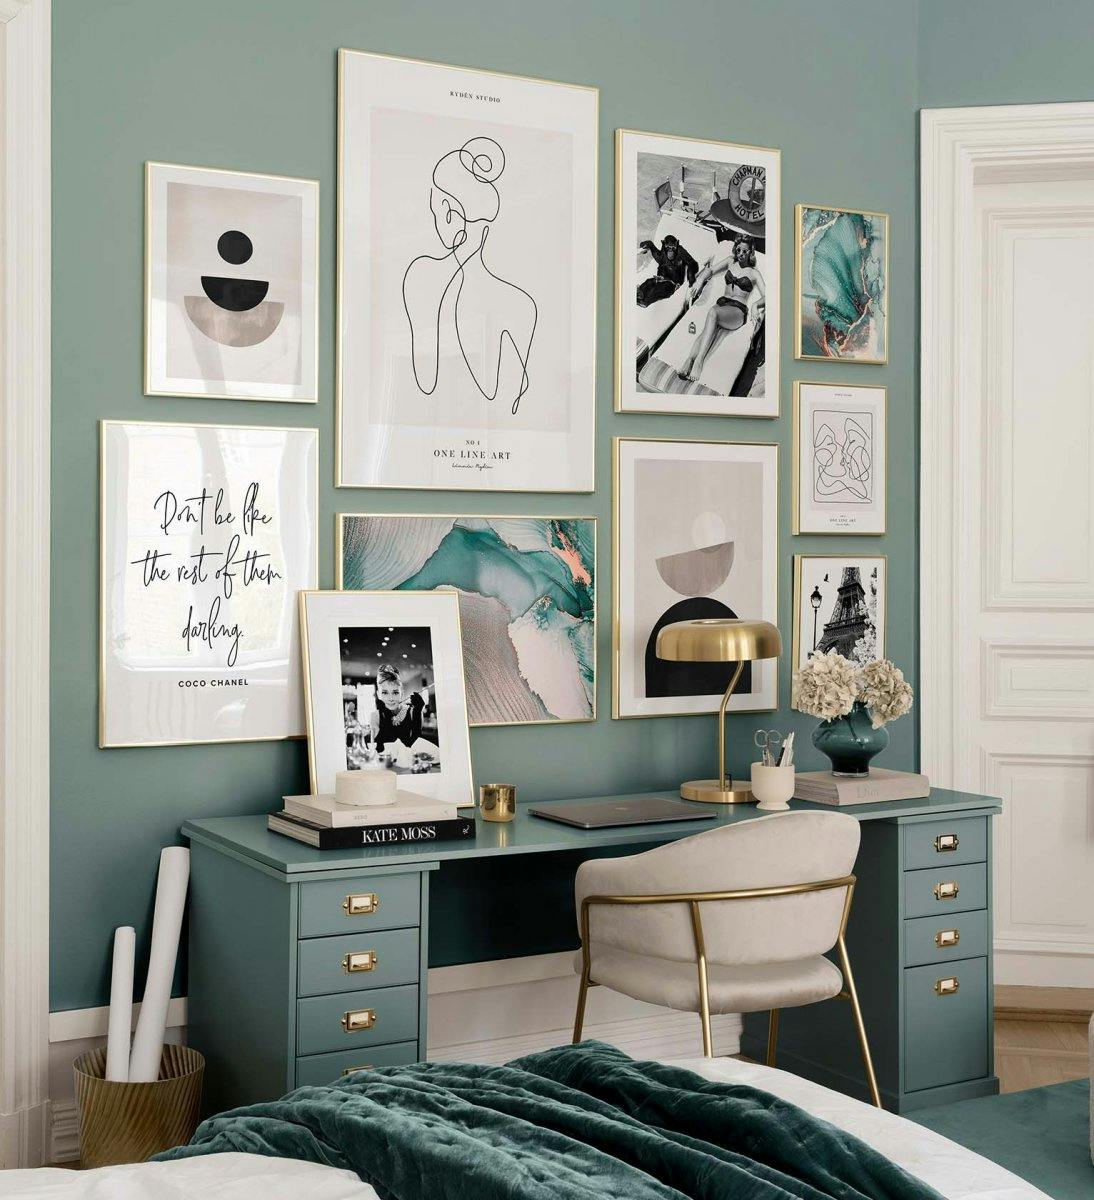 Perete de galerie trendy cu printuri grafice, artă de linie și fotografii în culori verzi și naturale cu rame aurii pentru dormi